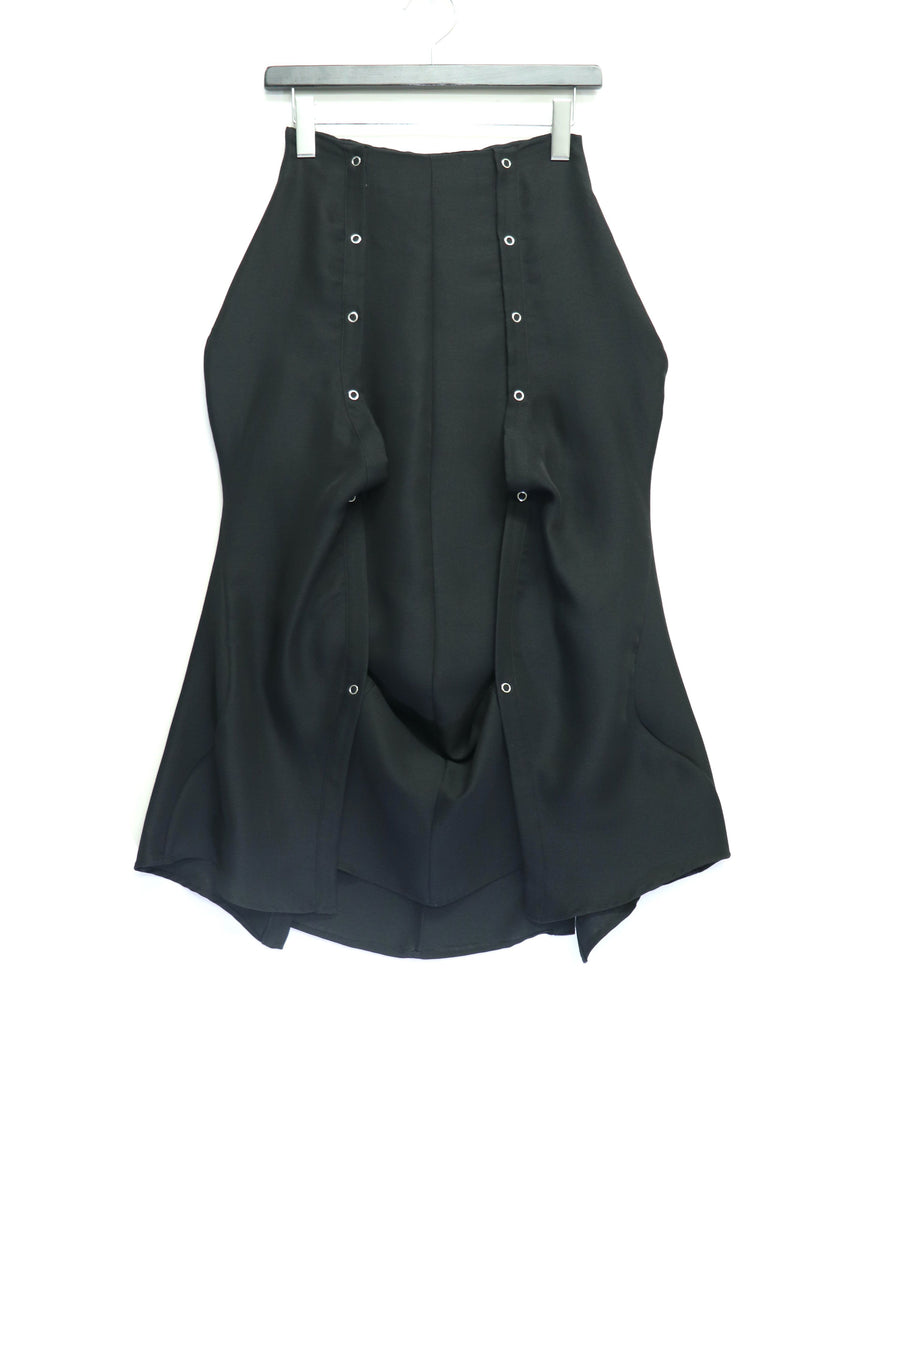 AKIKOAOKI  chemise skirt-03